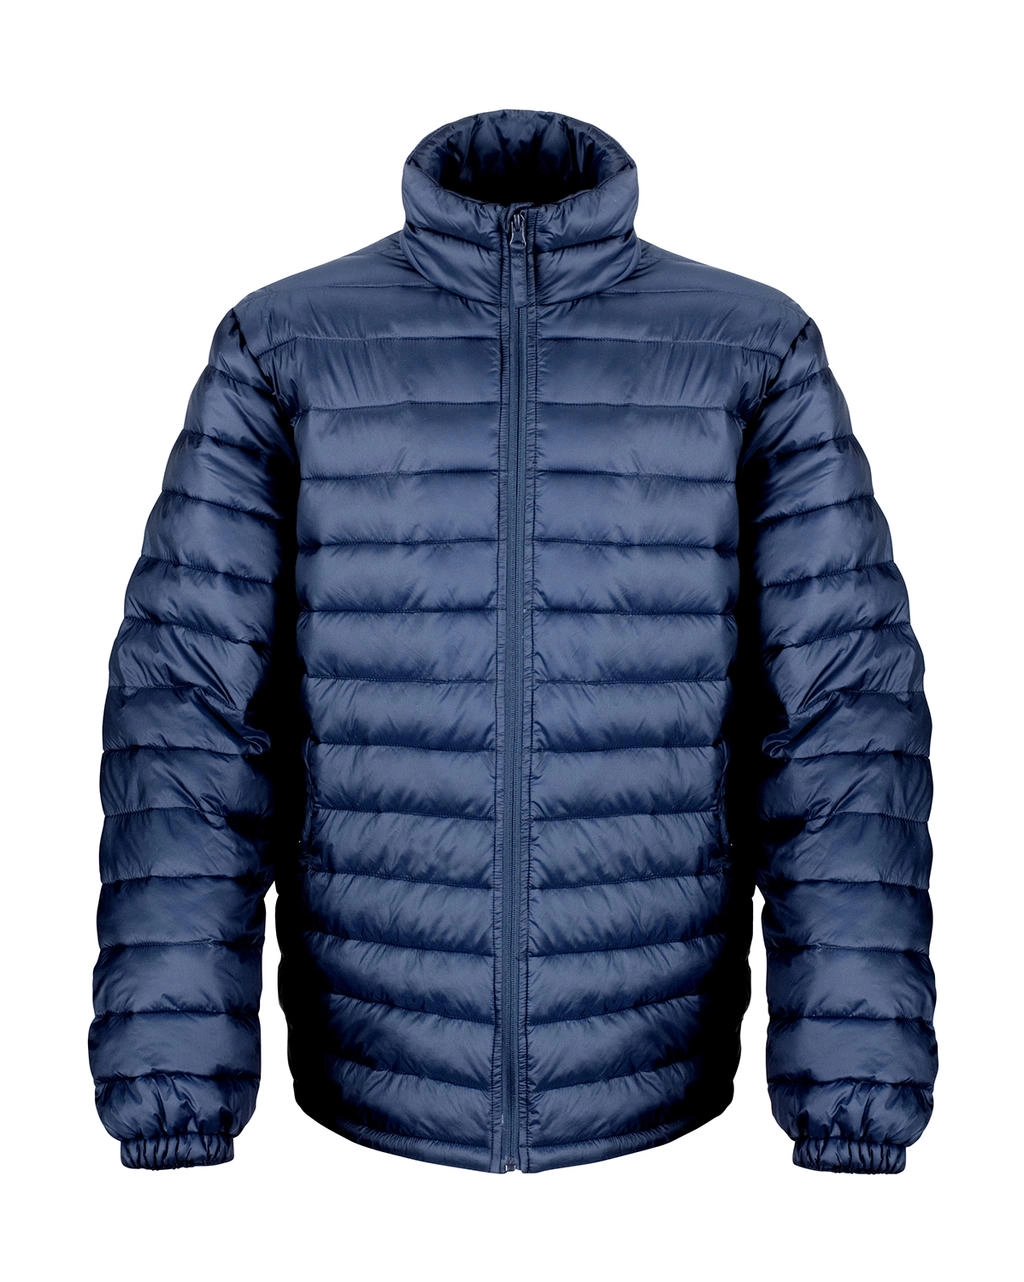 Ice Bird Padded Jacket zum Besticken und Bedrucken in der Farbe Navy mit Ihren Logo, Schriftzug oder Motiv.